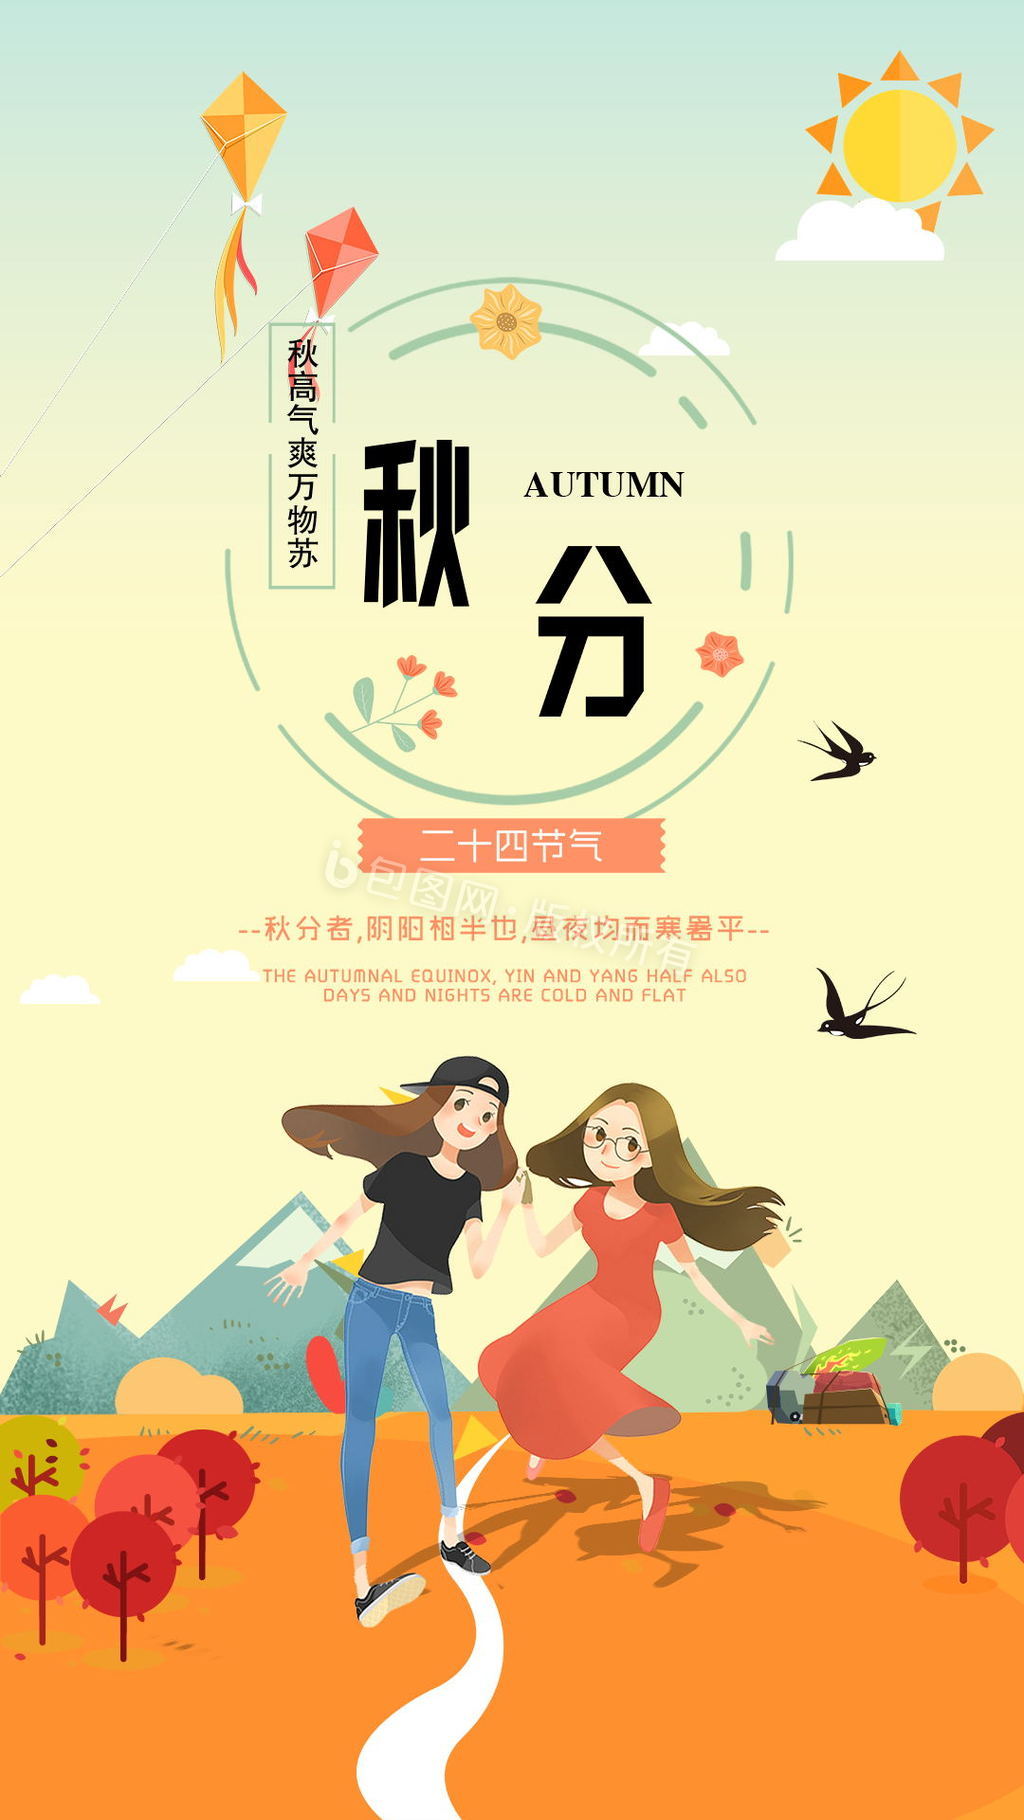 中国风中国二十四节日秋分节日动态海报图片